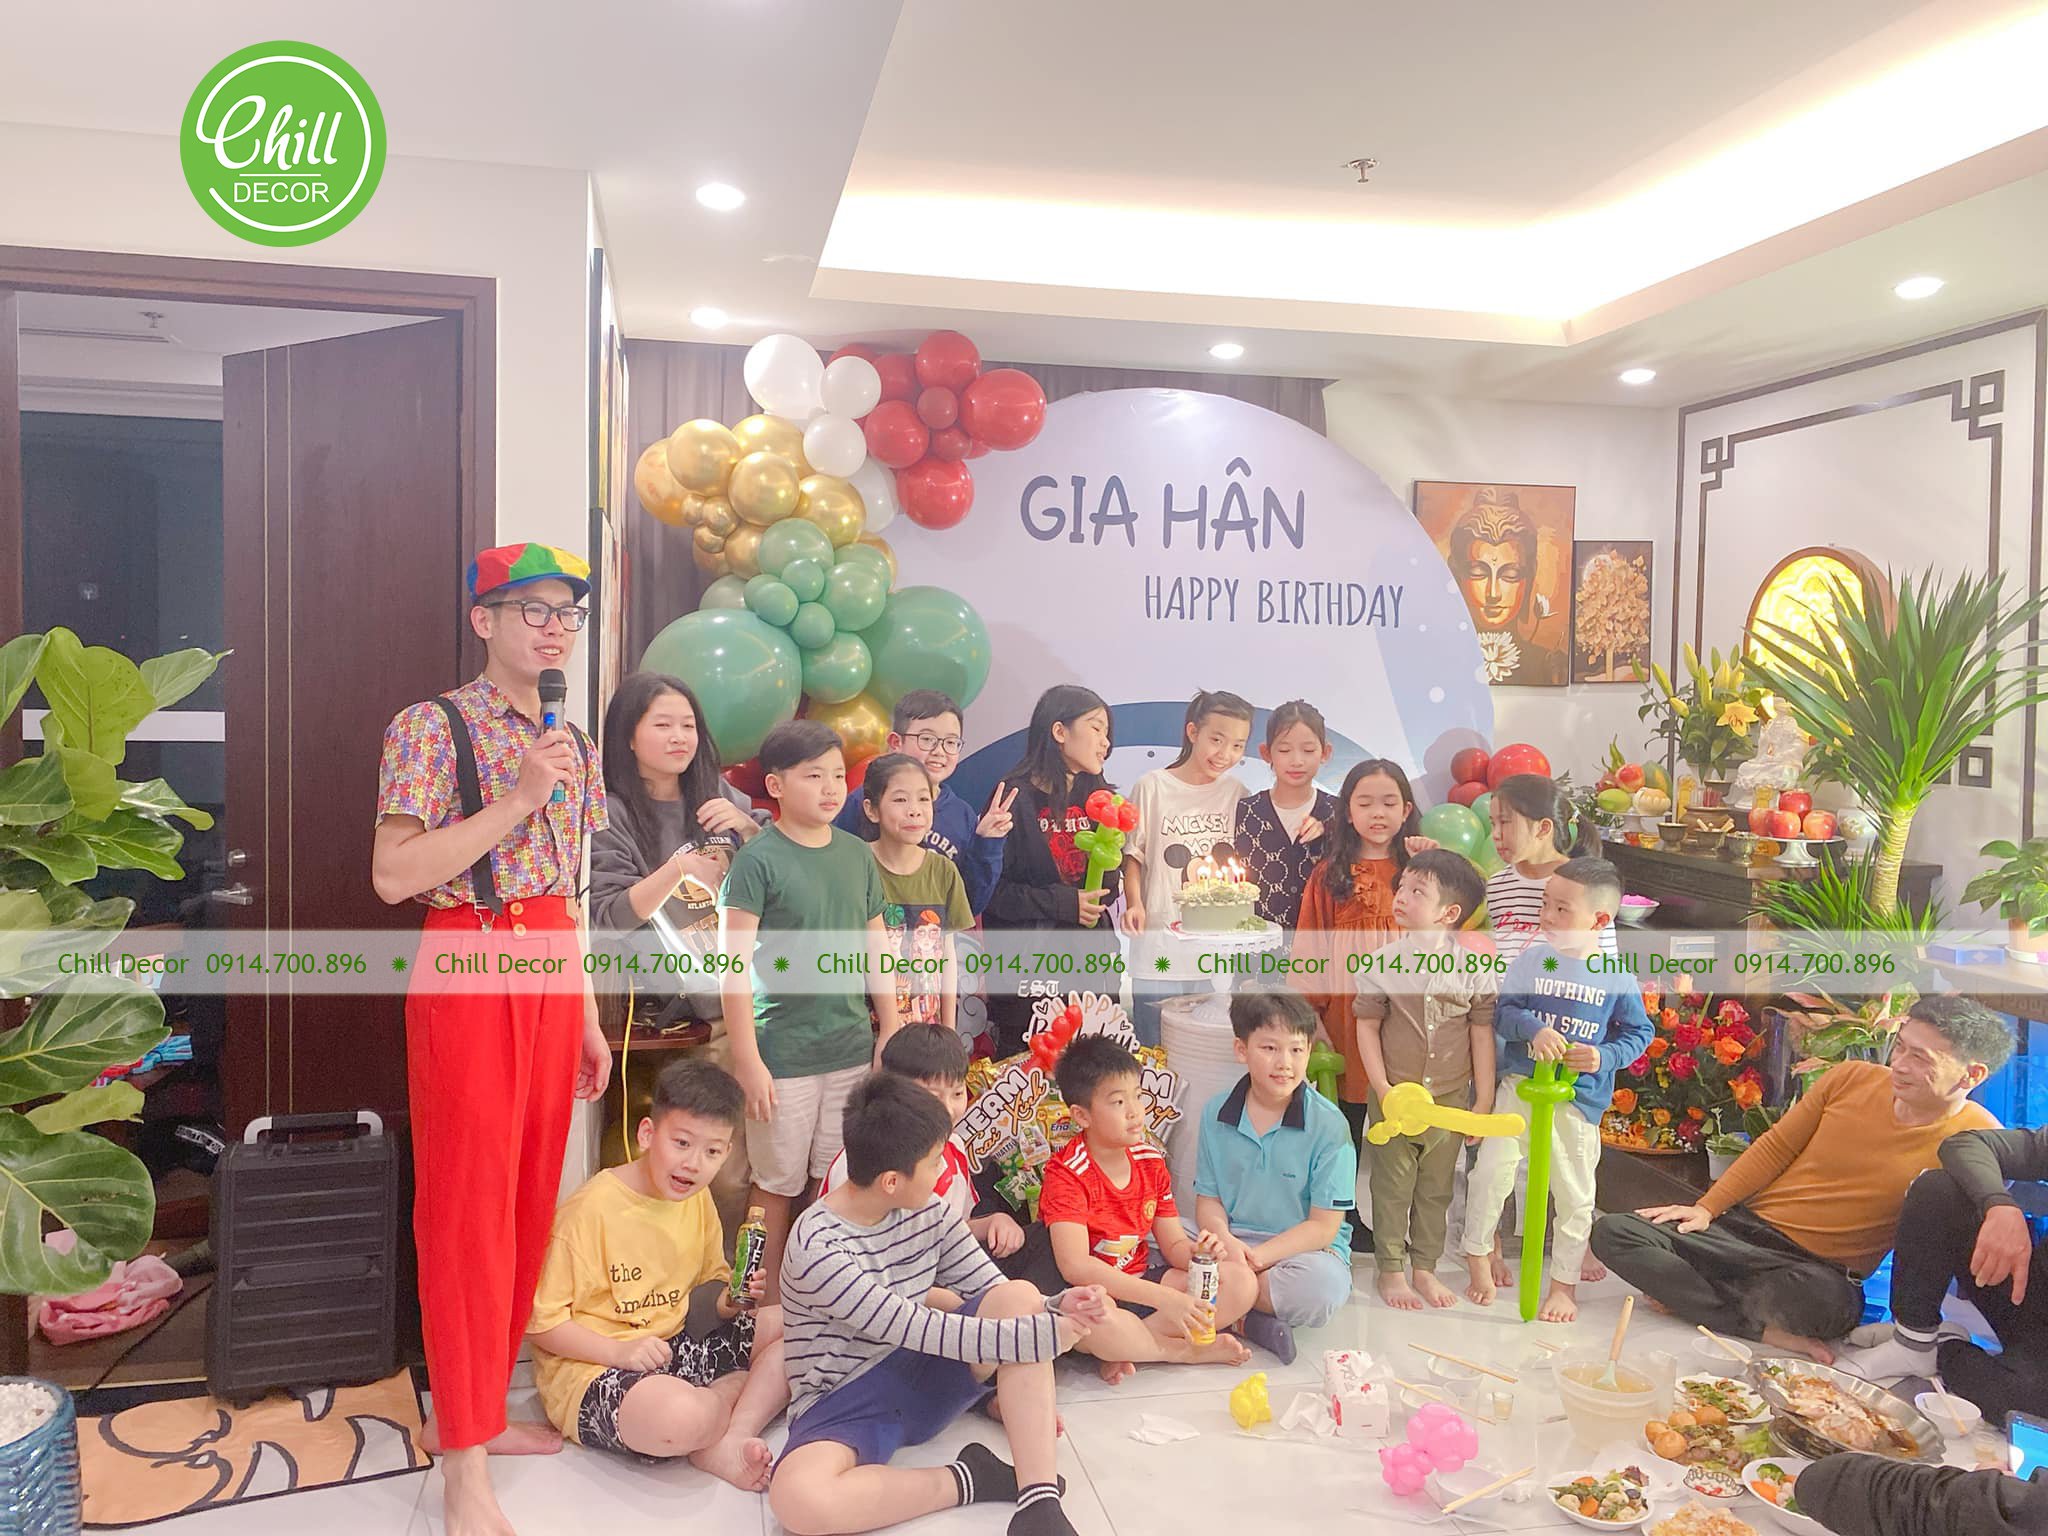 Dịch vụ trang trí sinh nhật cho bé gái tại Hà Nội - Chill decor